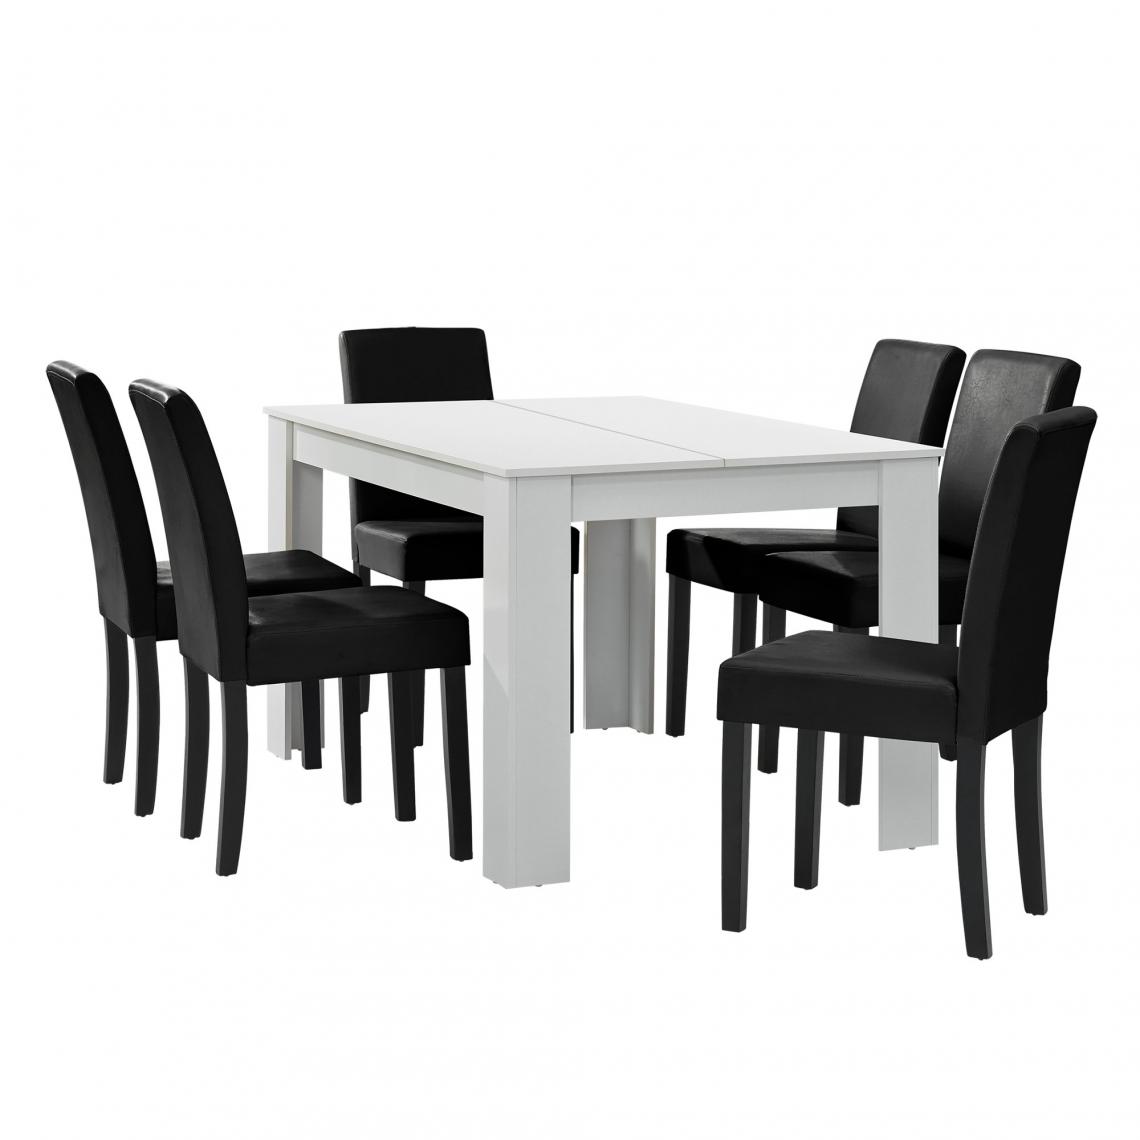 Helloshop26 - Table à manger blanc mat avec 6 chaises noir cuir synthétique rembourré 140x90 cm 03_0004024 - Tables à manger